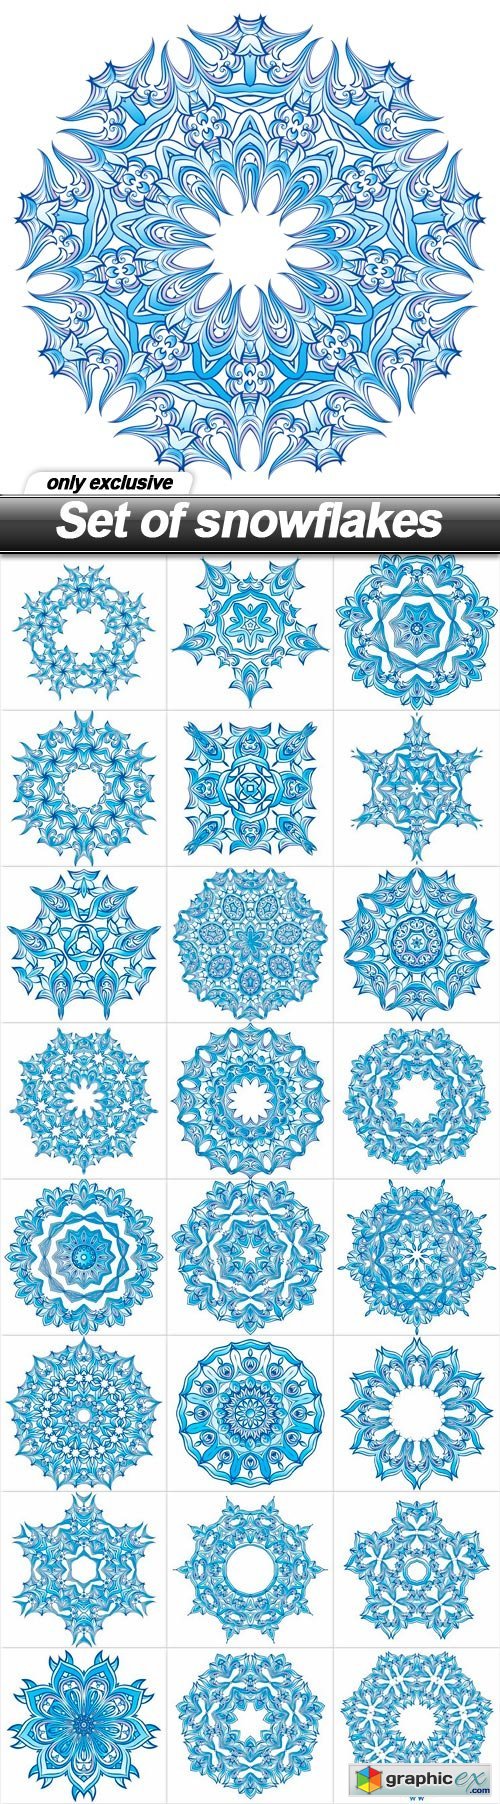 Set of snowflakes - 25 EPS